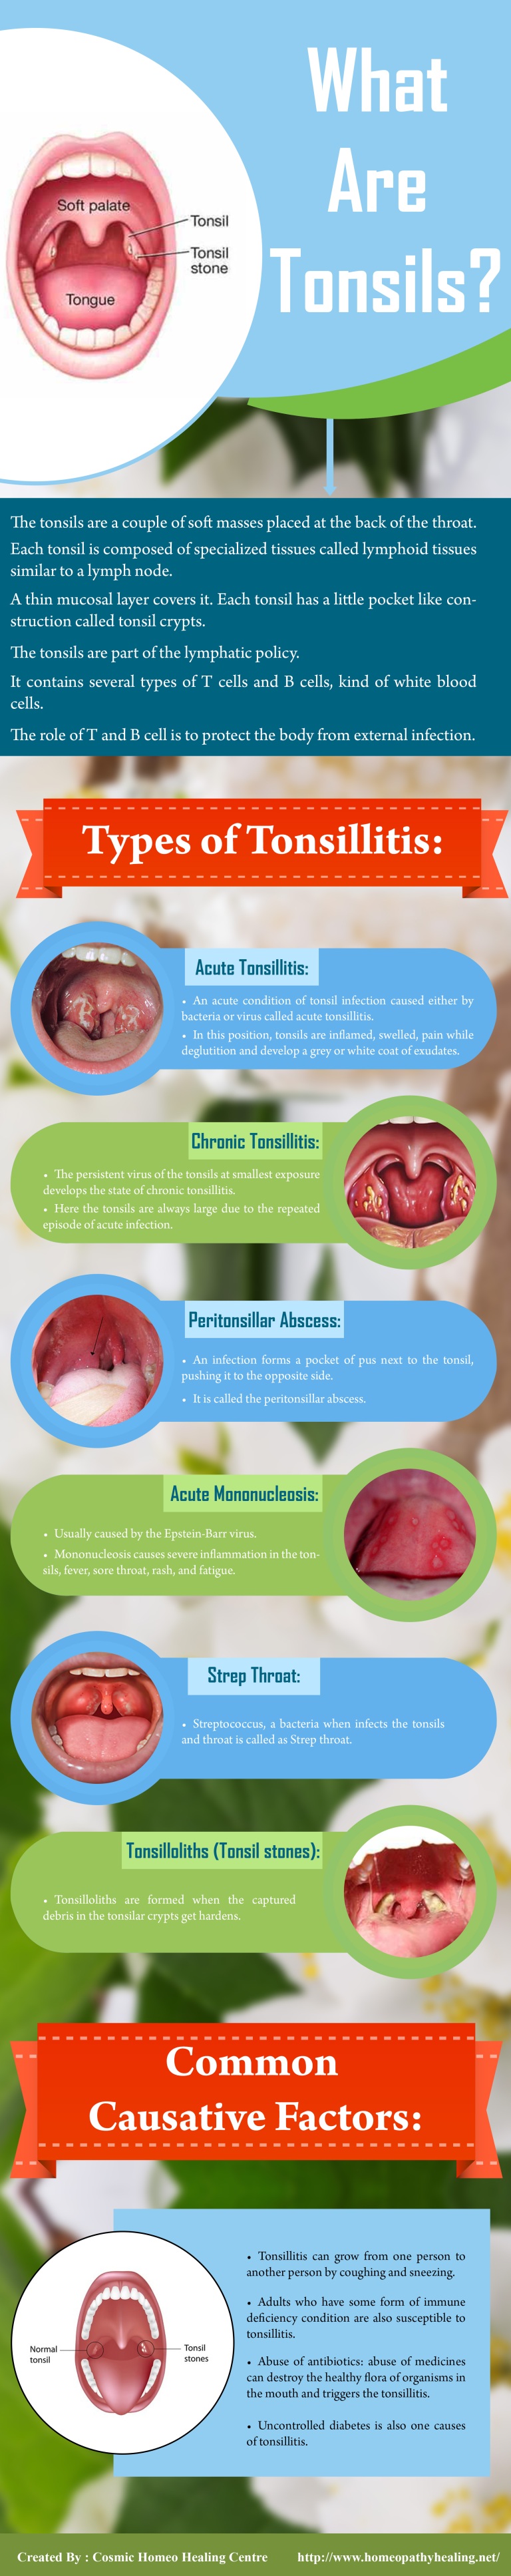 Types of Tonsillitis